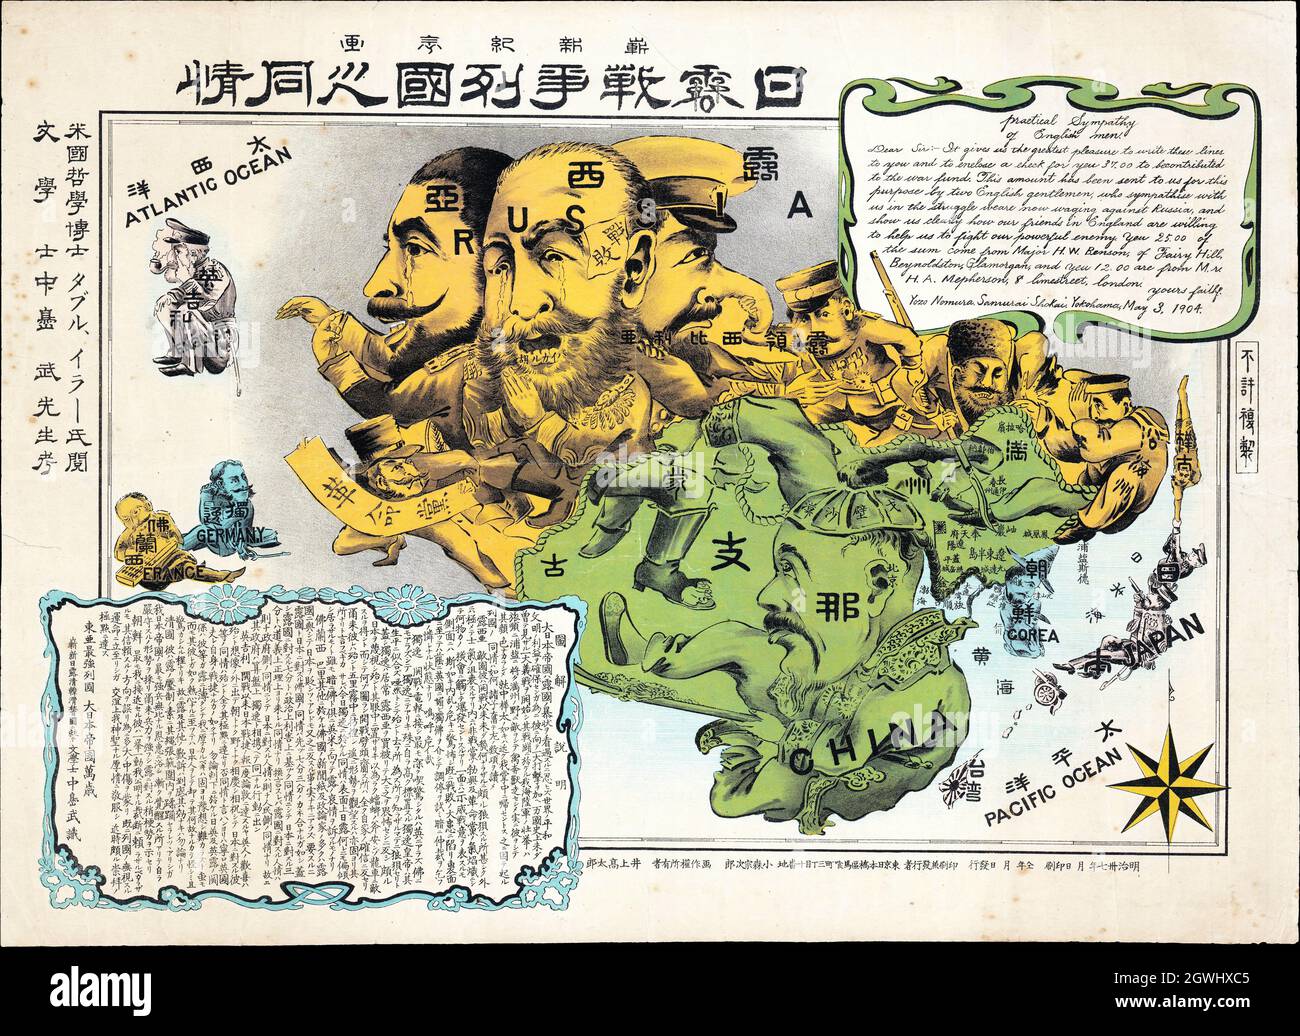 1904 Nomura Samurai Shokai Russo - carte sério-comique de guerre japonaise de l'Asie. Carte satirique. Banque D'Images